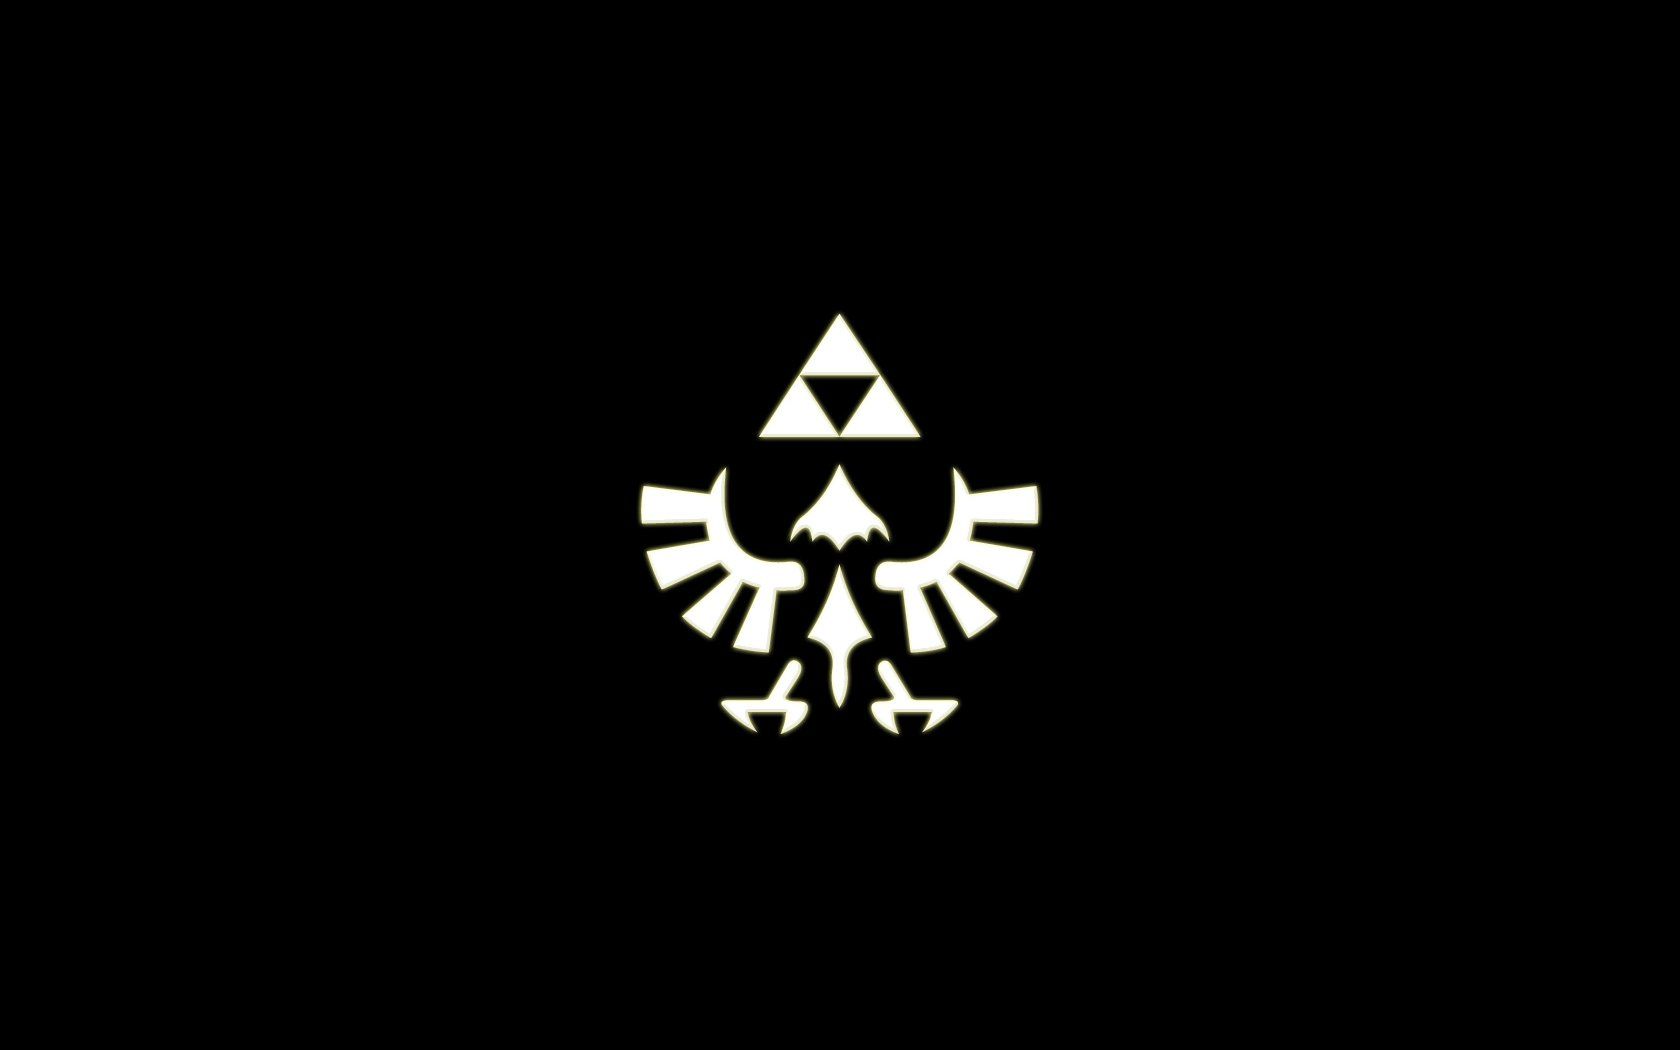 Link The Legend of Zelda Skyward Sword wallpaper | 1900x1200 ...